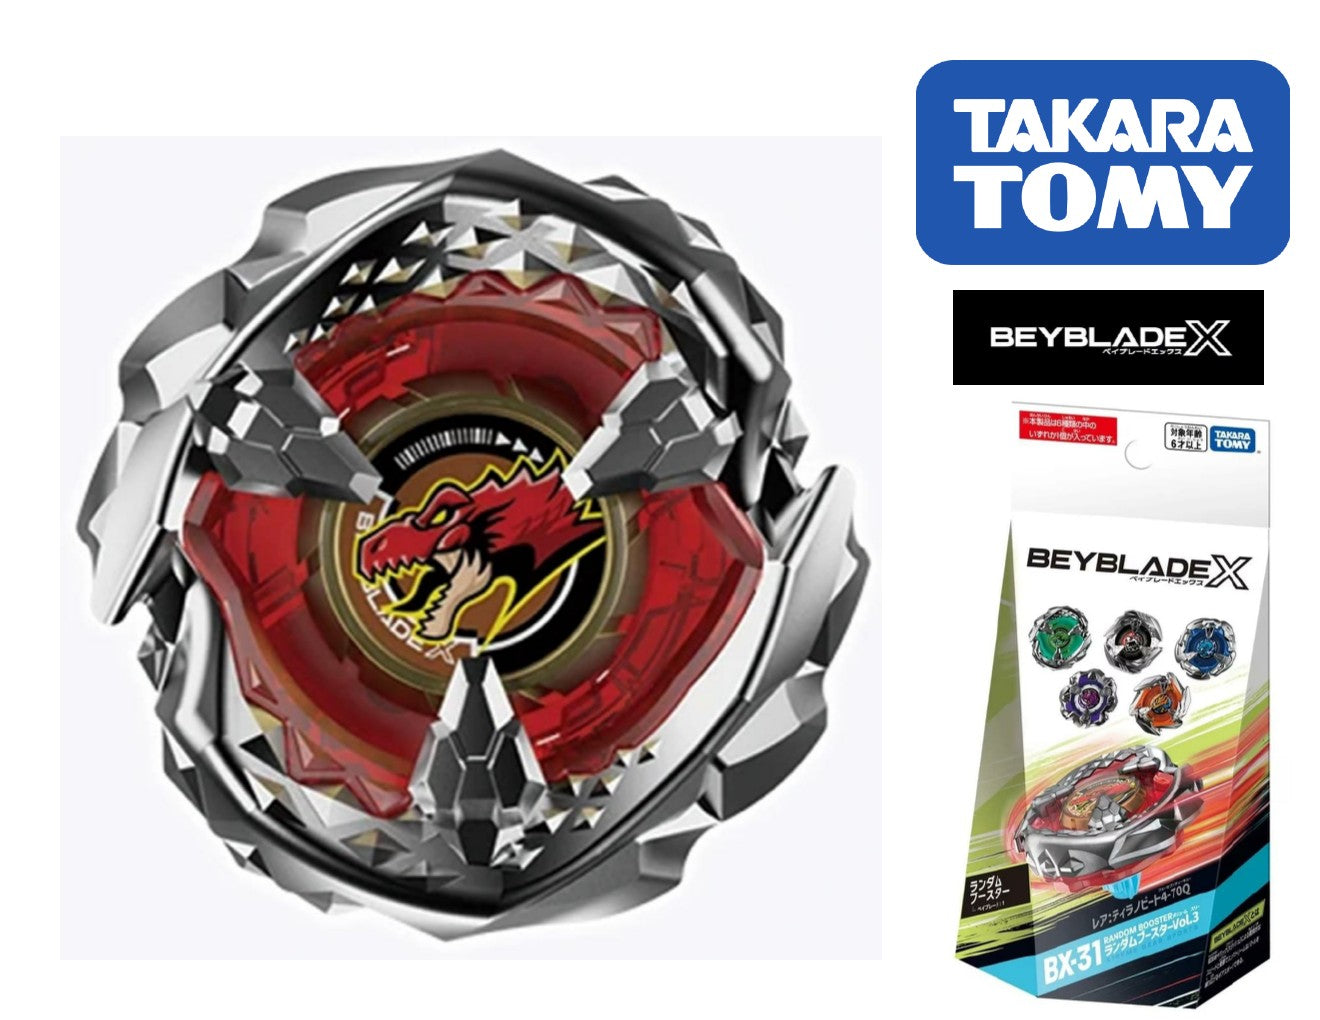 Takara Tomy Beyblade X BX-31 01 Tyranno Beat 4-70Q (Prize) (Japan 